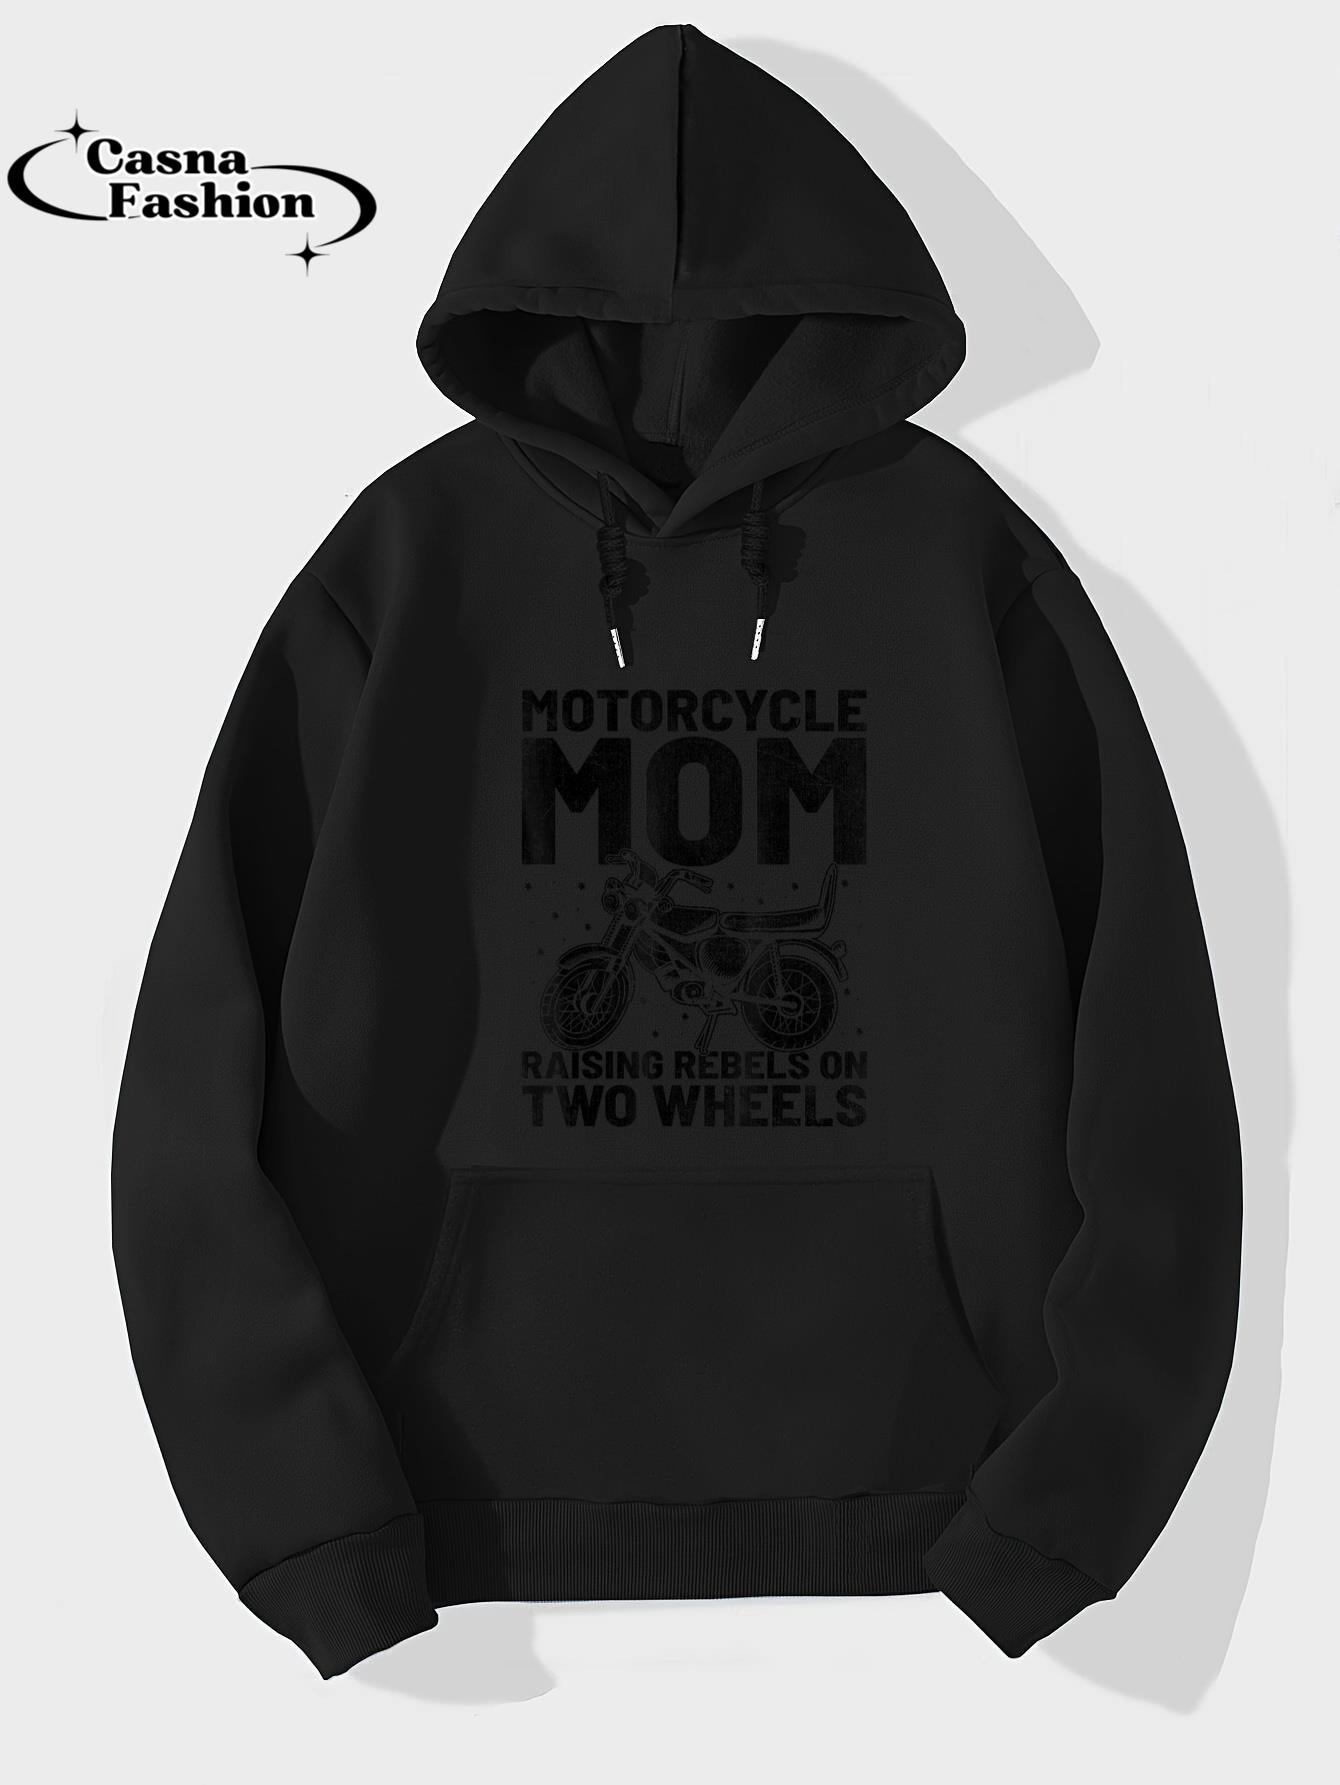 casnafashion_Hoodie_Motorcycle Mom Raising Rebels On Two Wheels T-Shirt_hoodie_black hoodie